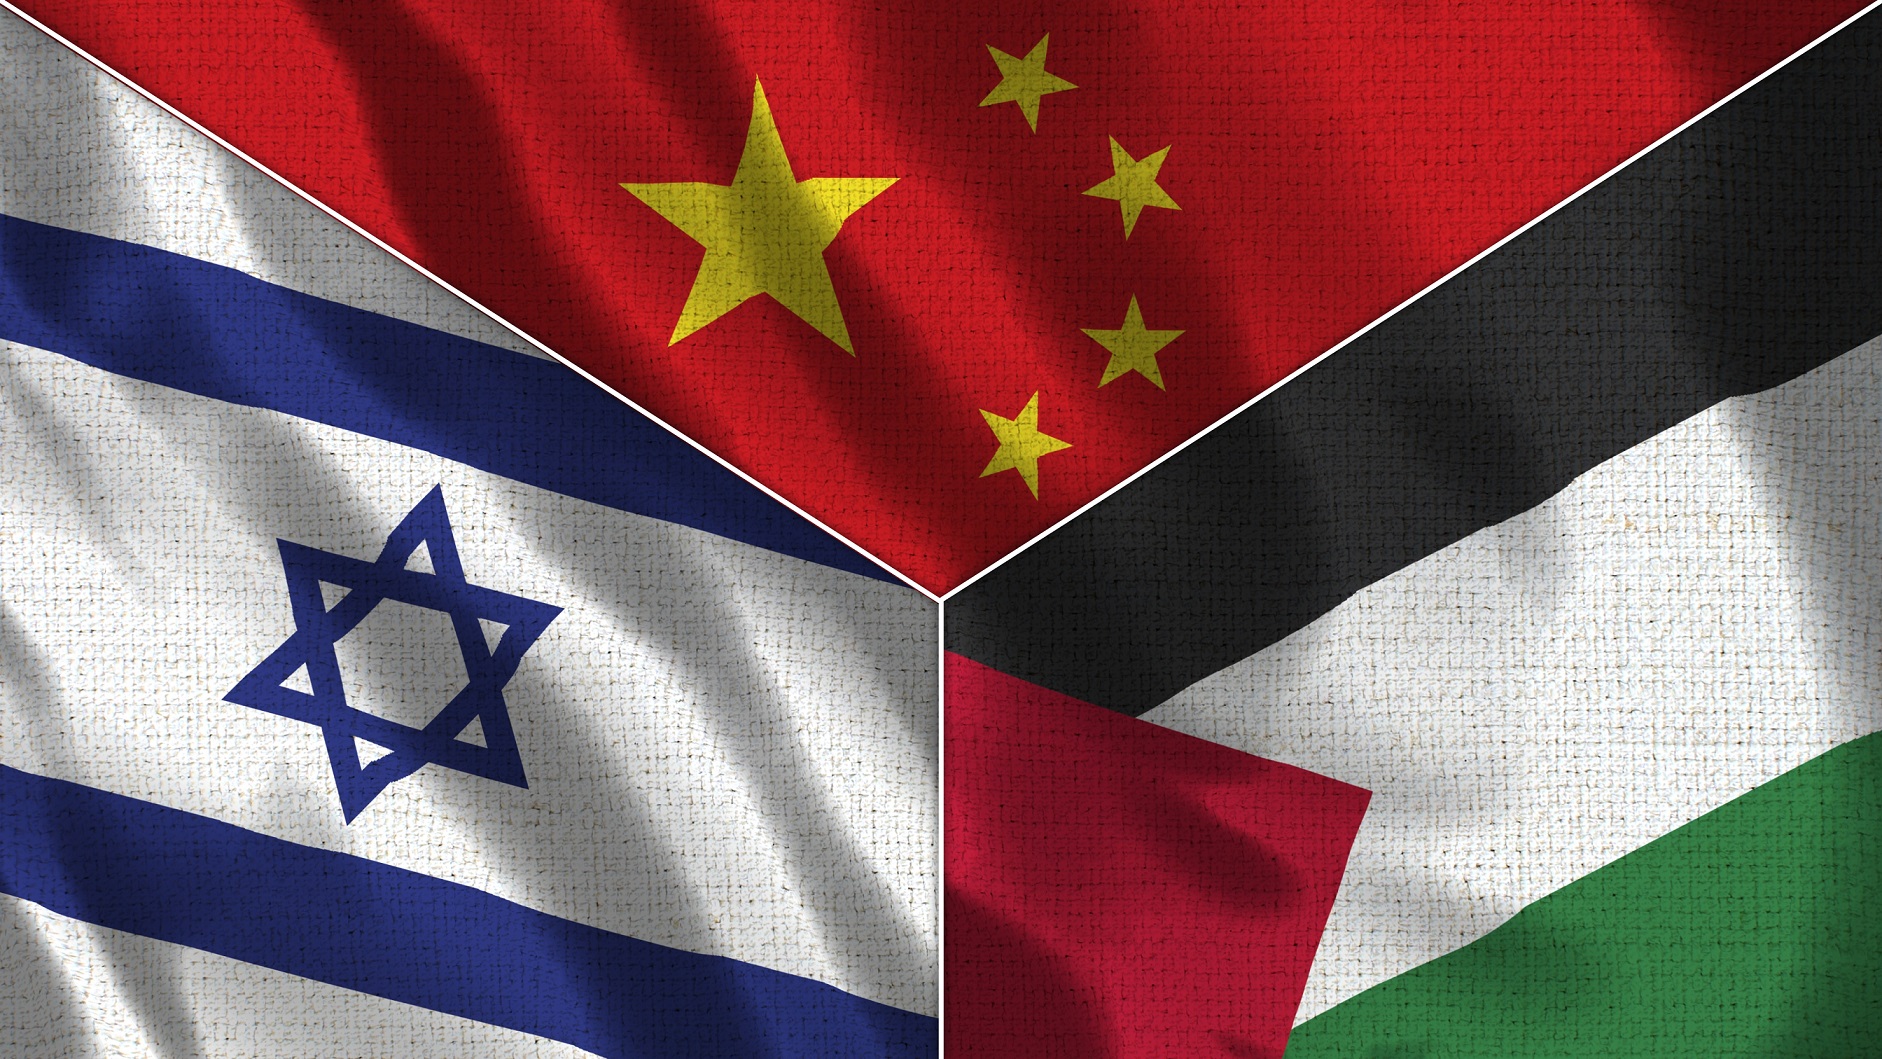 Μέση Ανατολή: Ετοιμη η Κίνα να μεσολαβήσει για επίτευξη συμφωνίας Ισραήλ - Παλαιστινίων